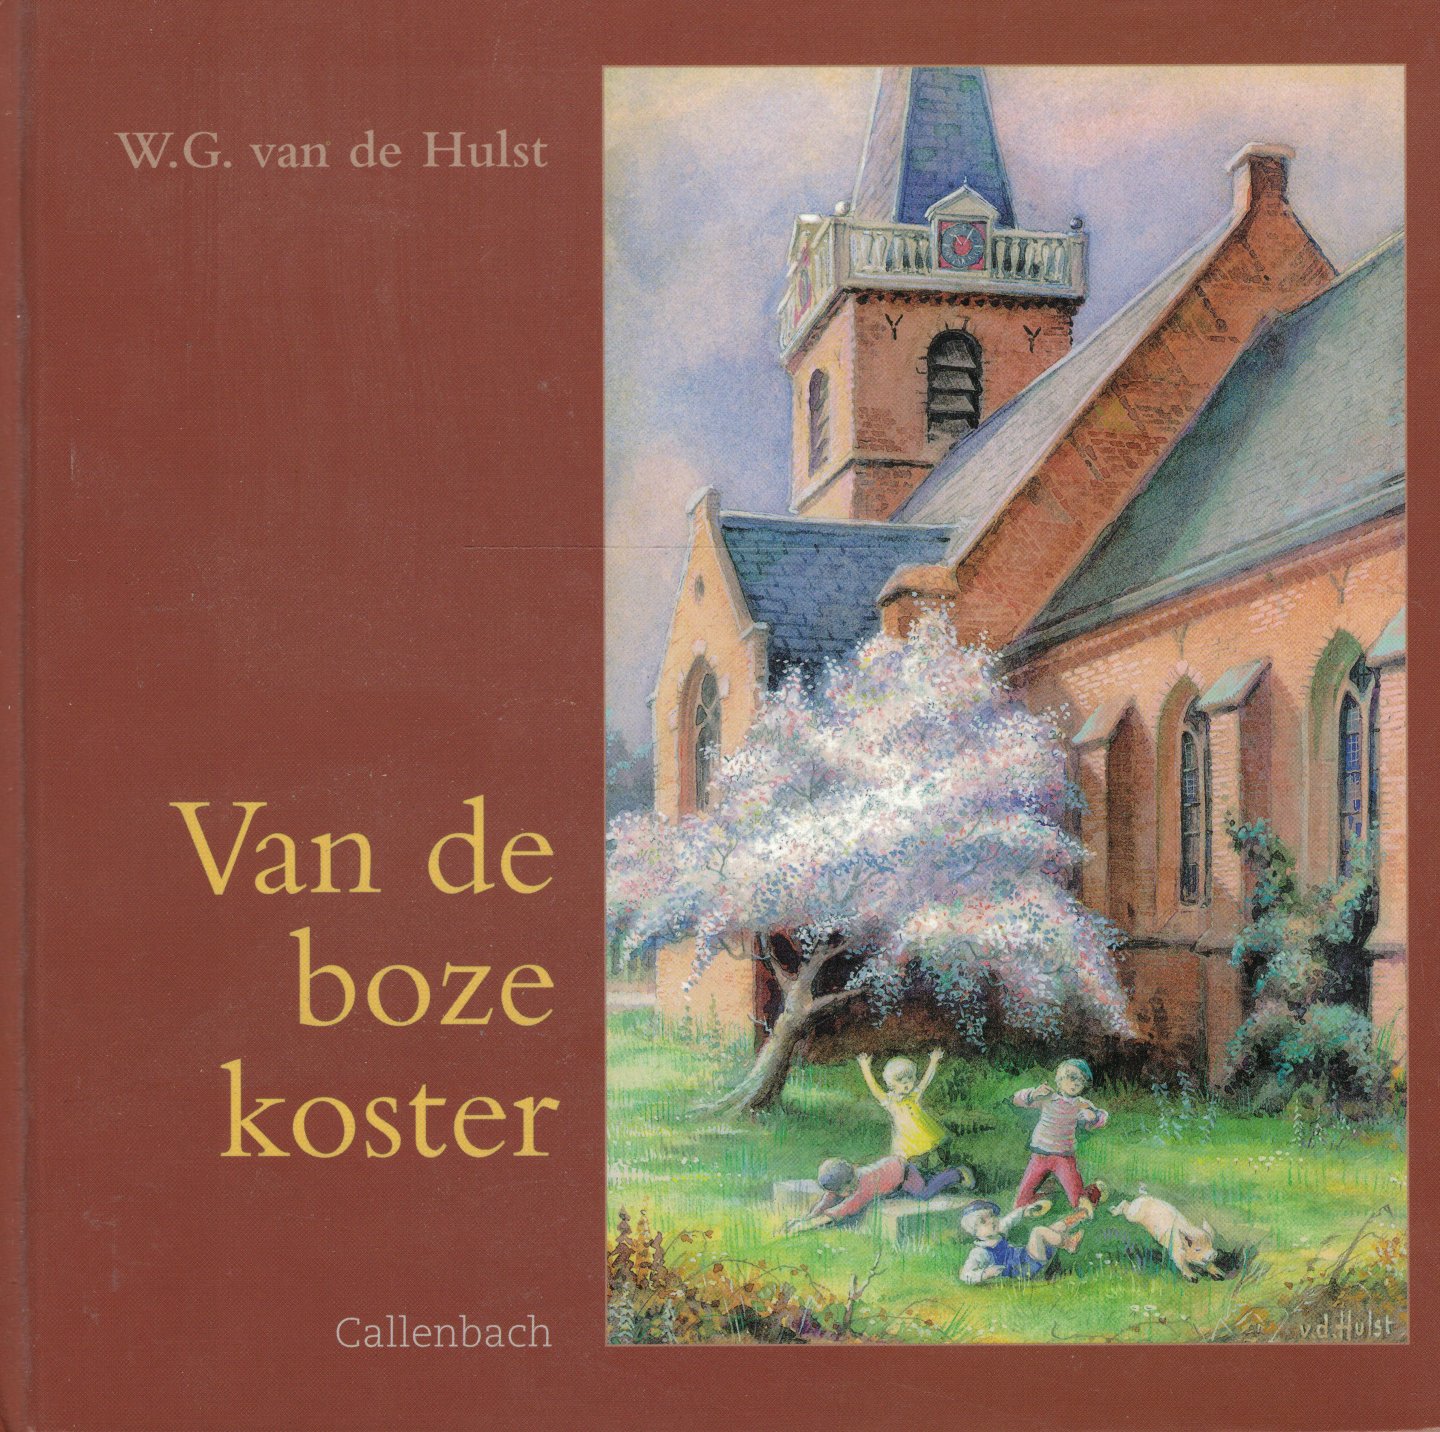 Hulst Jr., W.G. van de (illustraties) & R.M. van de Hulst (redactie) - Van de boze koster